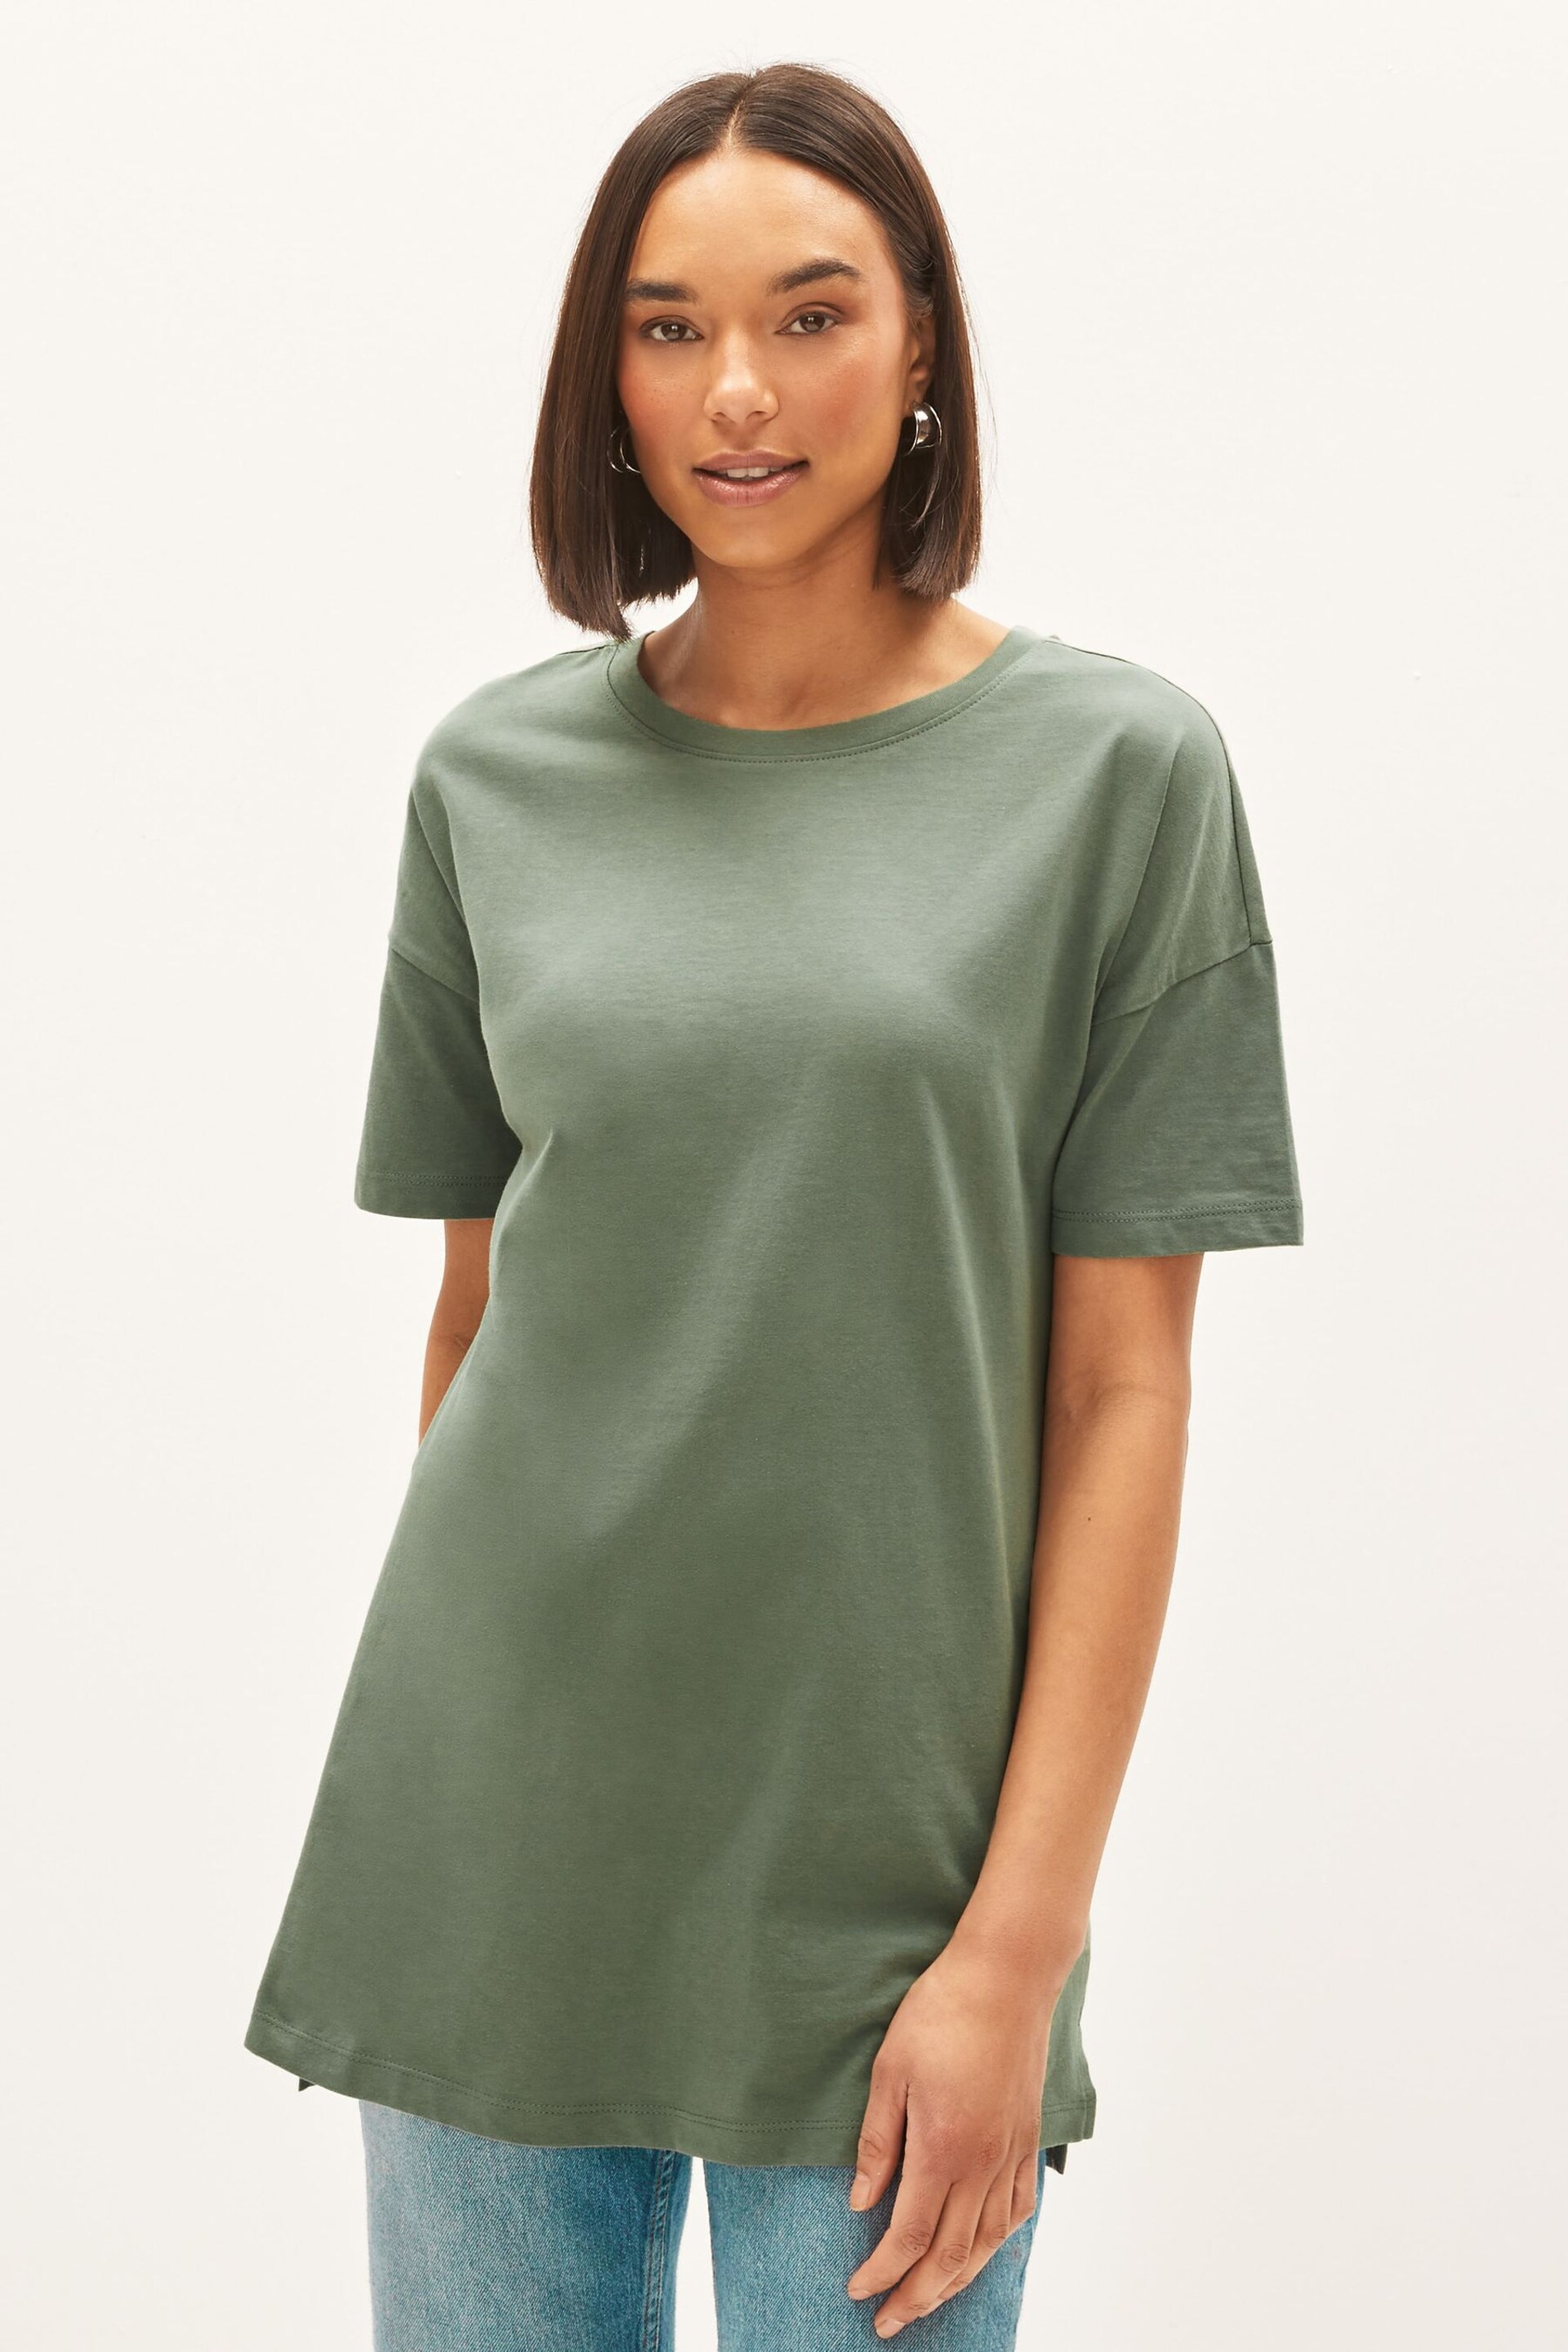 Khaki Green Oversized T-Shirt - Image 5 of 8